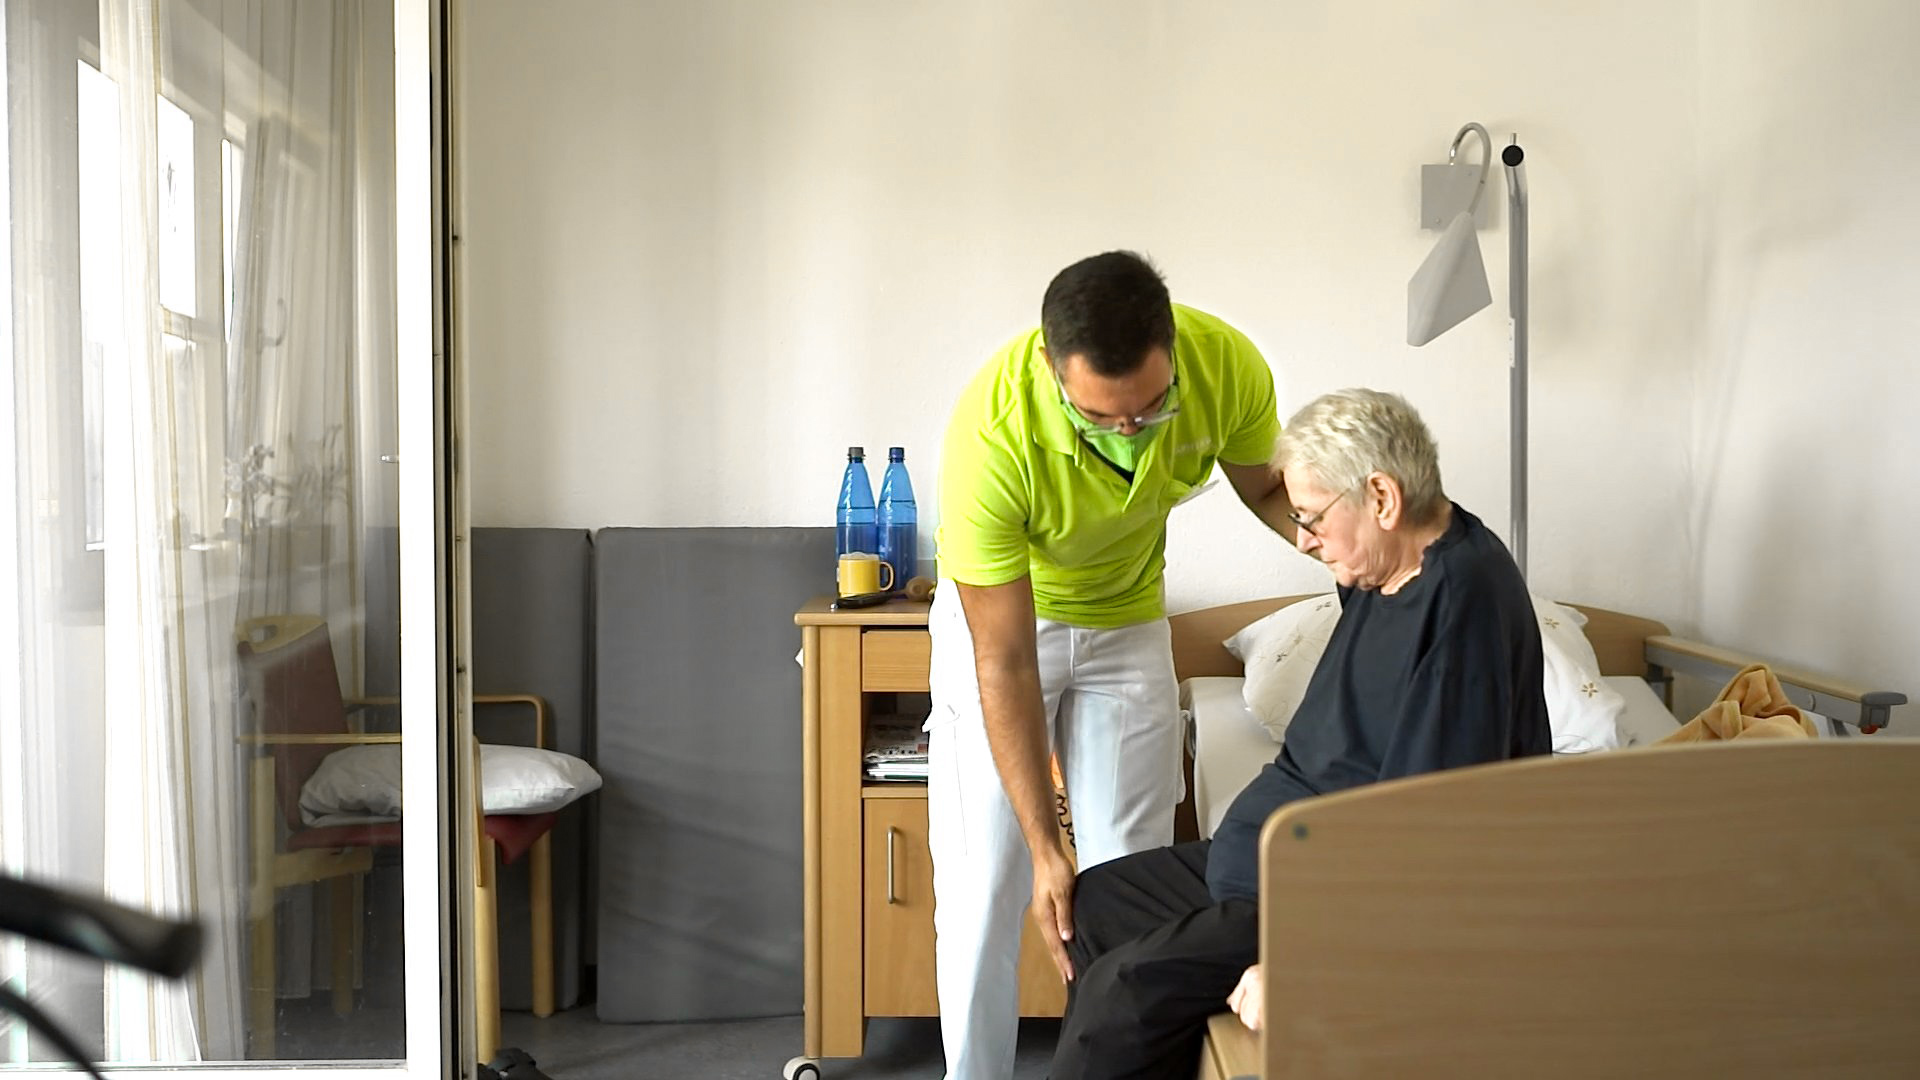 Pfleger assistiert einem älteren Menschen beim Aufstehen